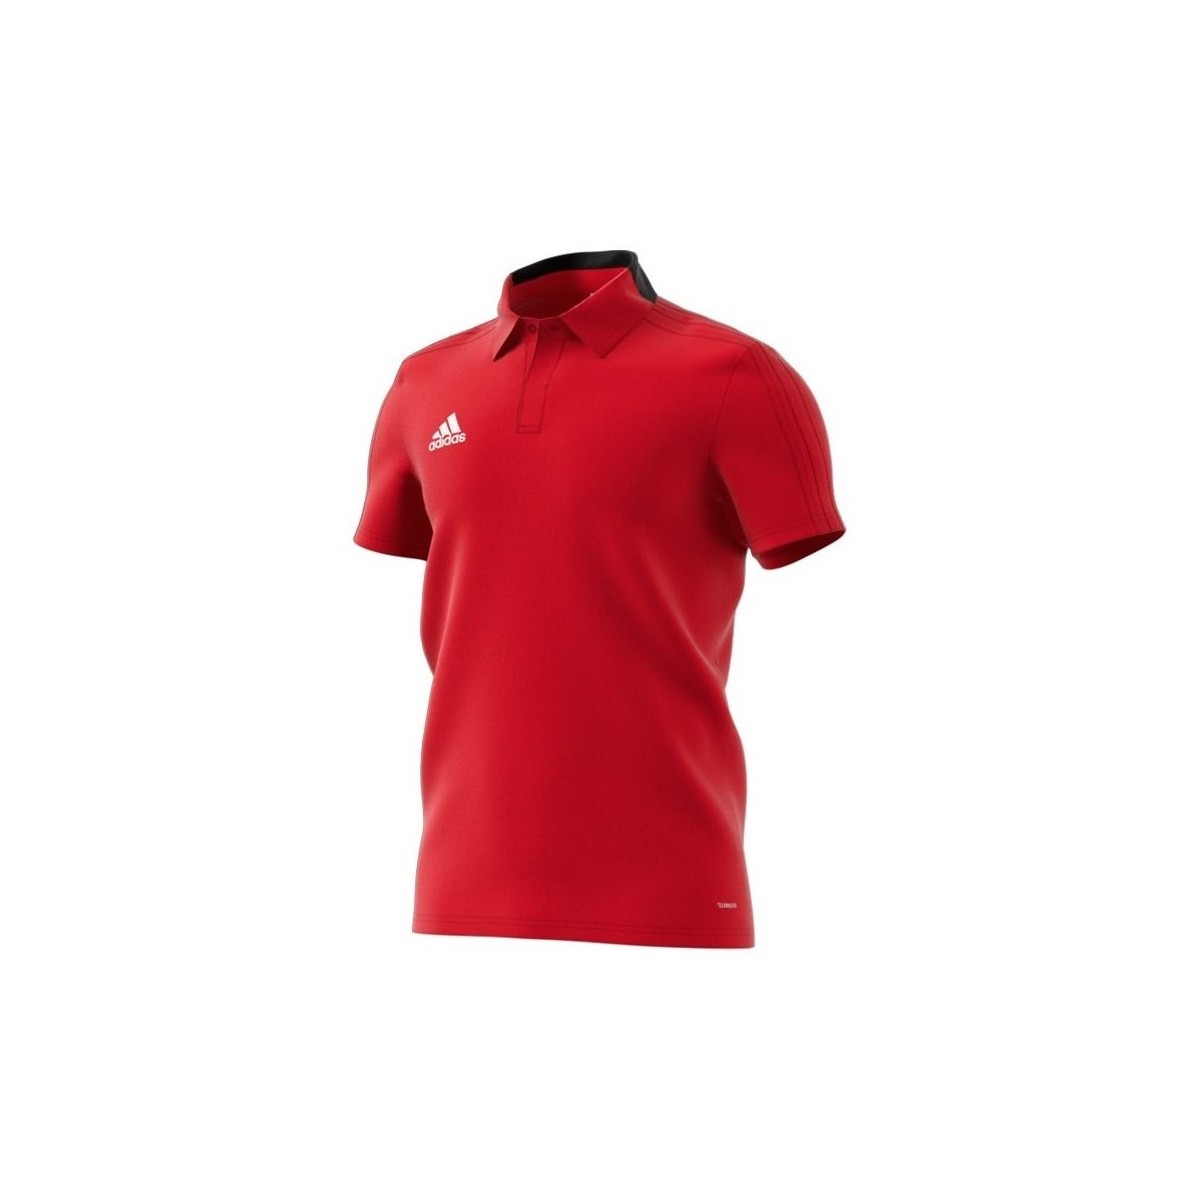 Textil Muži Trička s krátkým rukávem adidas Originals Condivo 18 Polo Červená